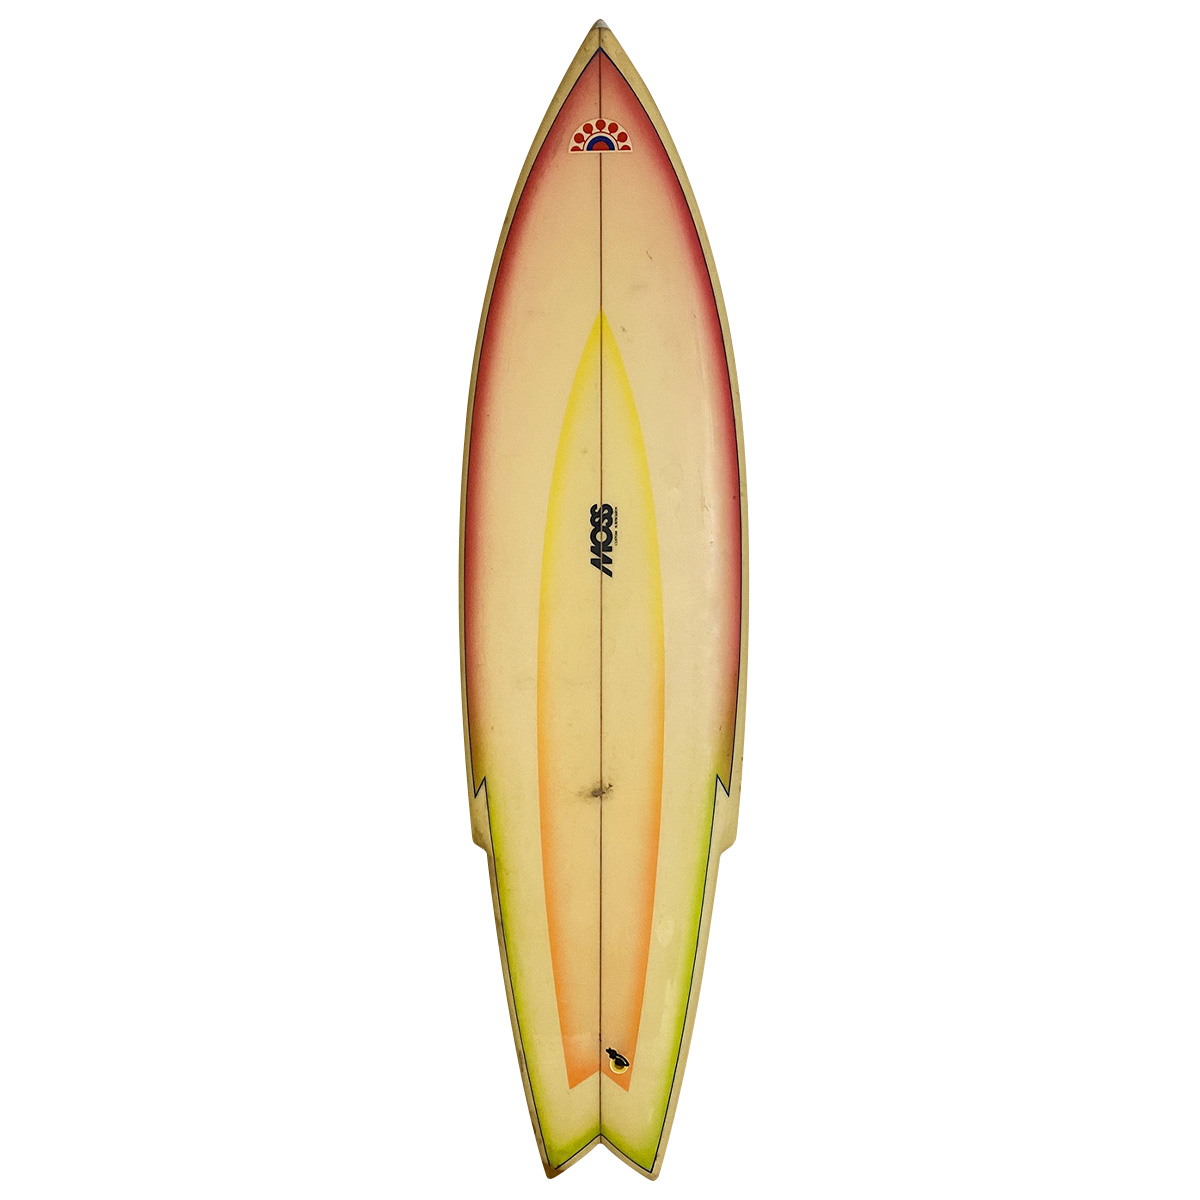 VINTAGE BOARD   販売中の商品   USED SURF×SURF MARKET